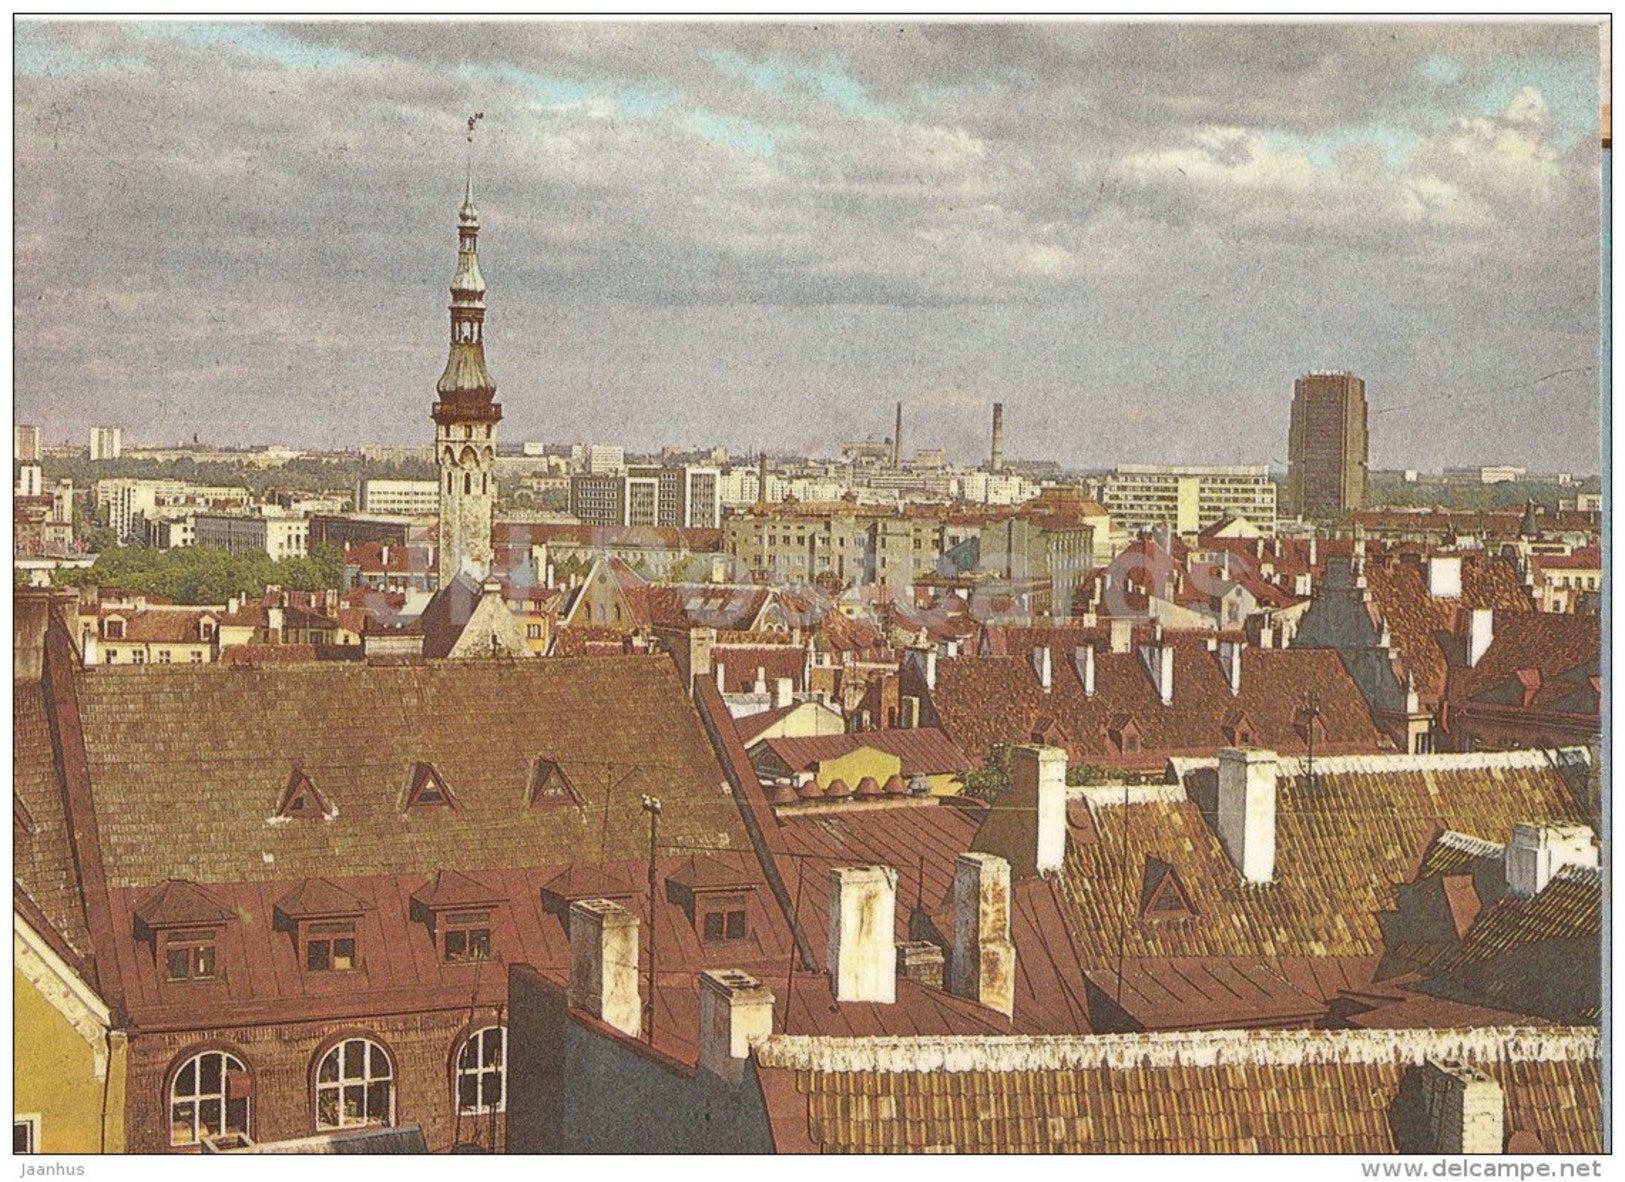 Tallinn roofs - Tallinn - 1987 - Estonia USSR - unused - JH Postcards